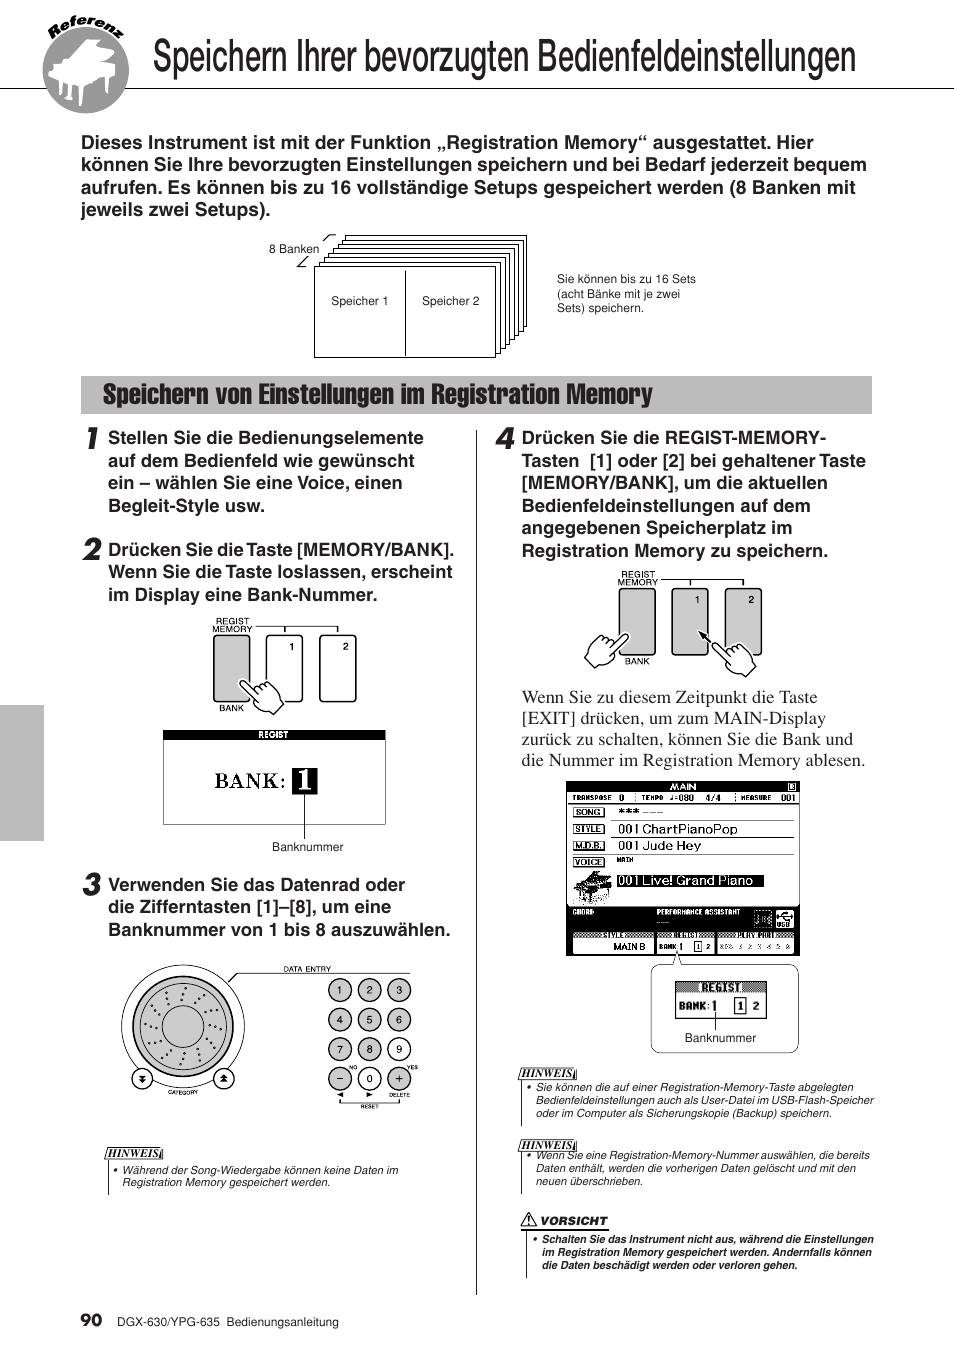 Speichern von einstellungen im registration memory, Seite 90 | Yamaha DGX-630 Benutzerhandbuch | Seite 90 / 160